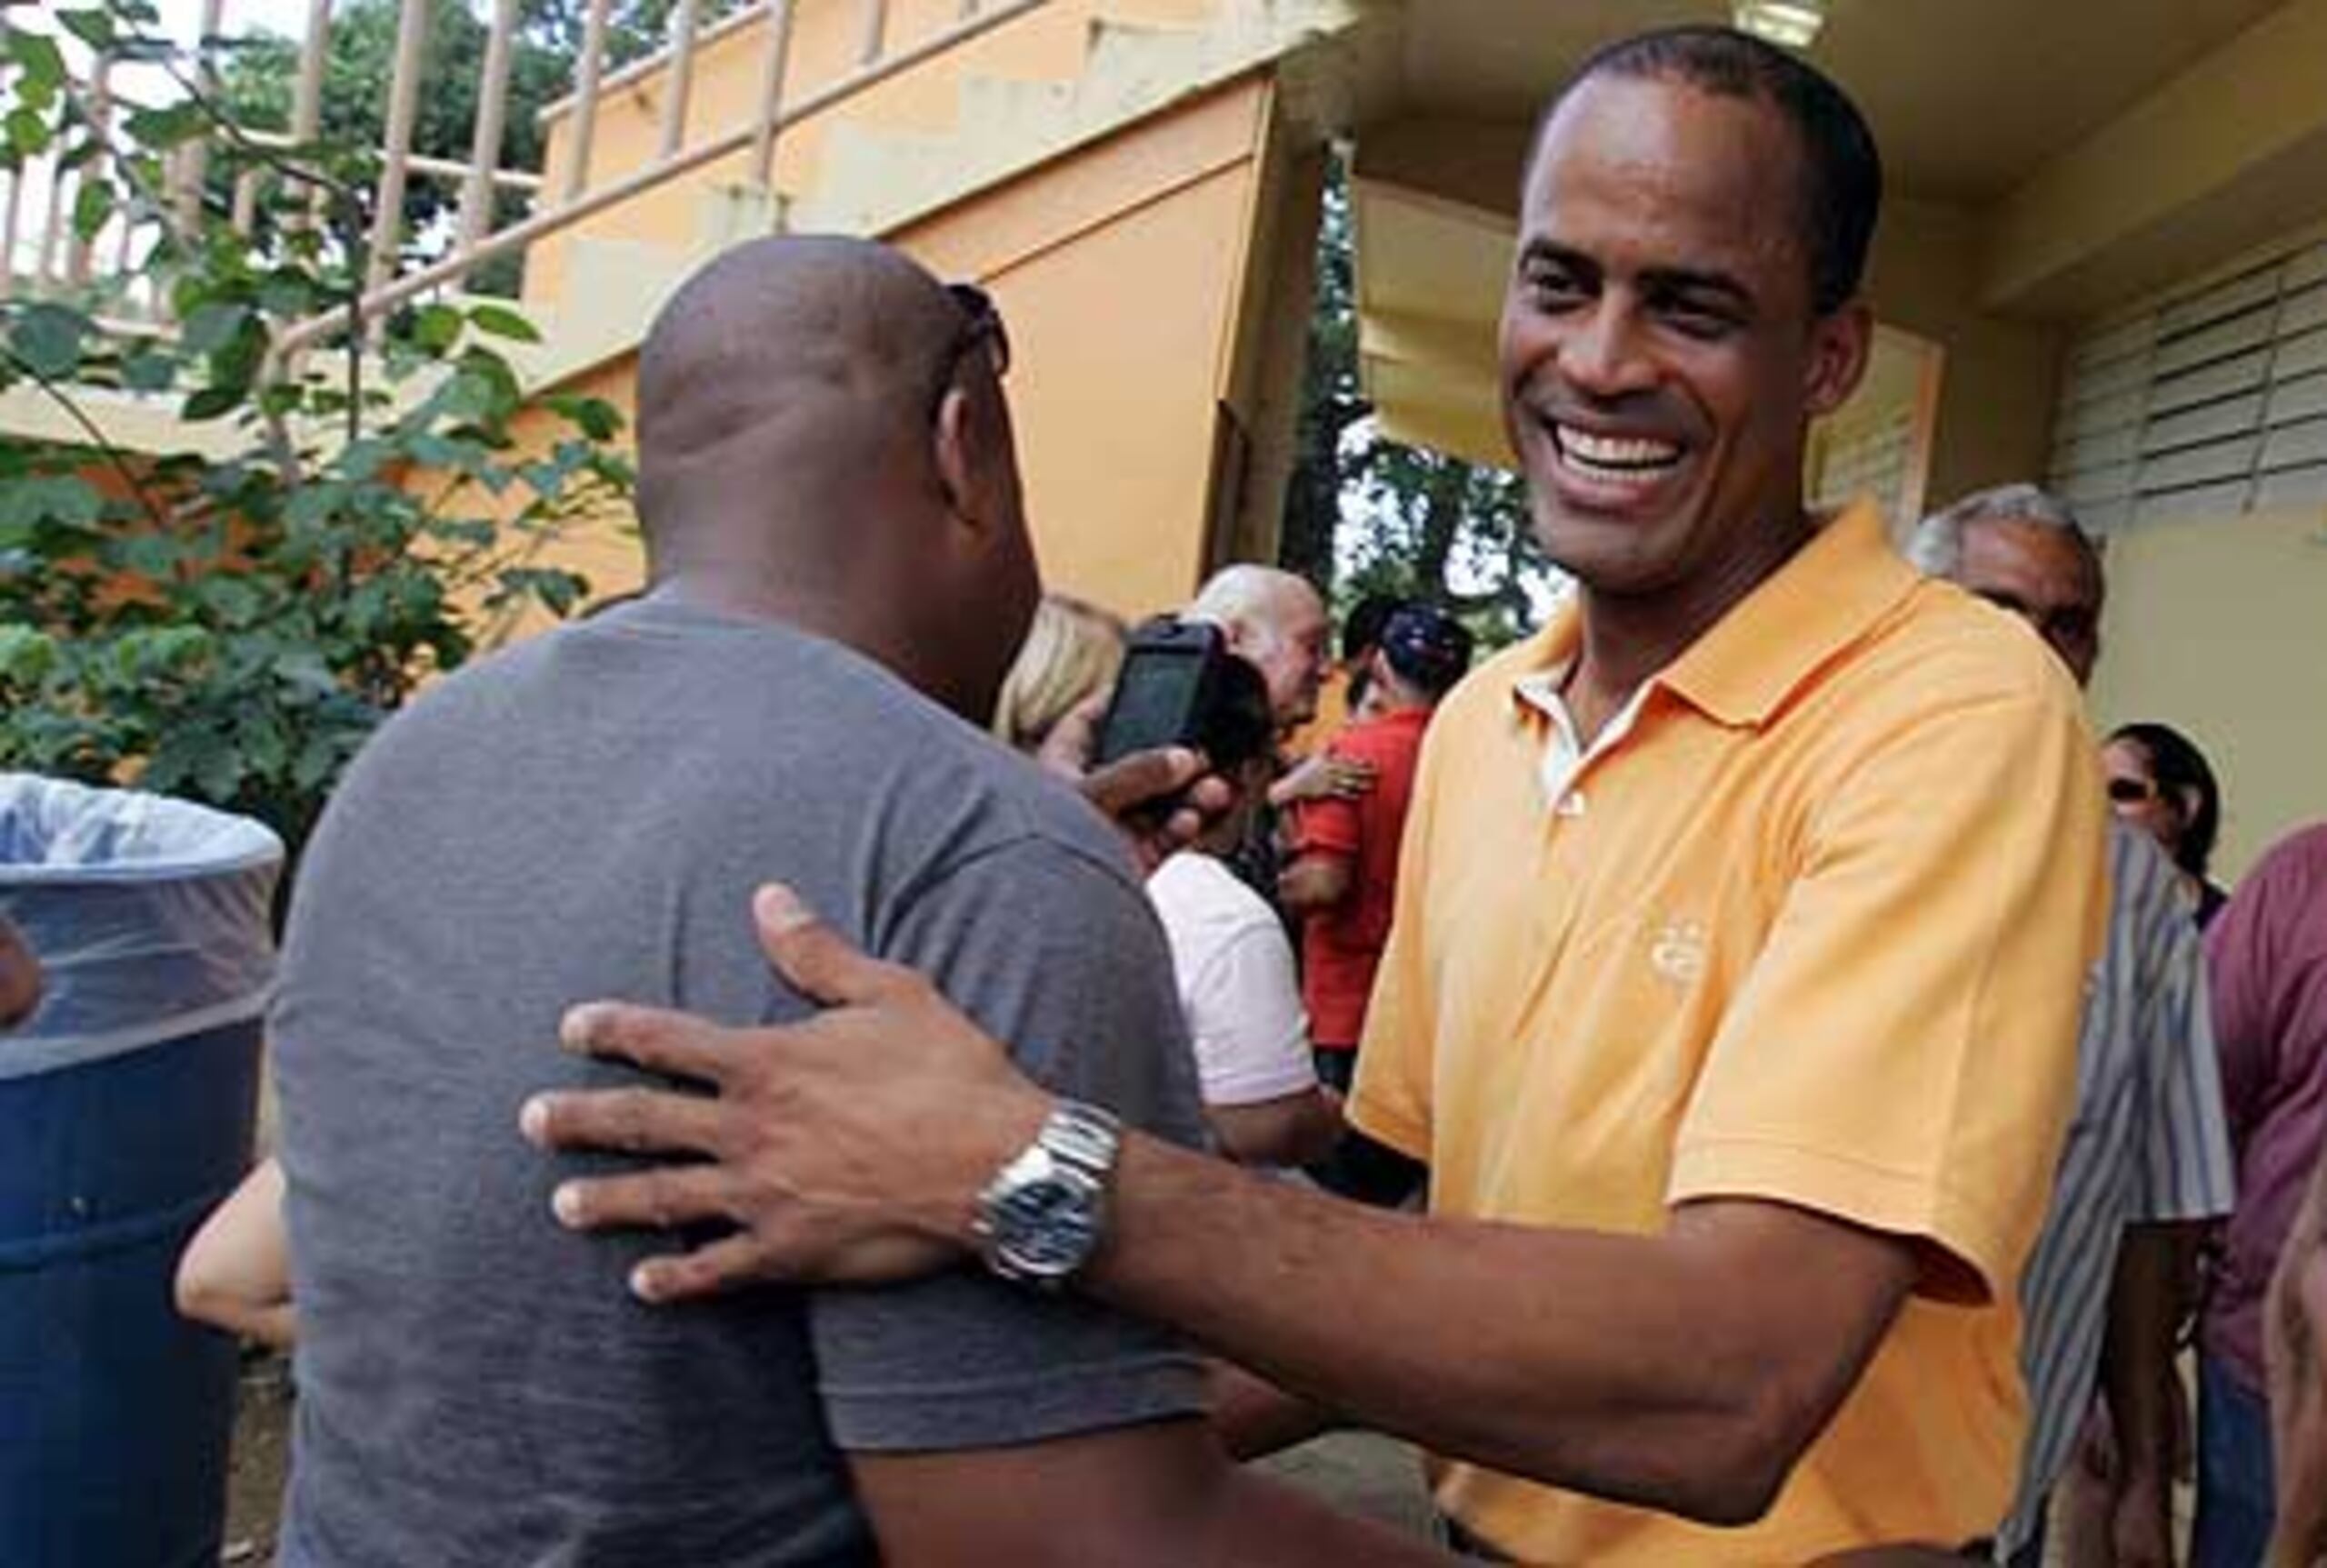 El candidato a la Gobernación por el PPR, Rogelio Figueroa, saludó a varios de los votantes en la escuela Parcelas Aguas Claras de Ceiba. (Primera Hora / Pipo Reyes)